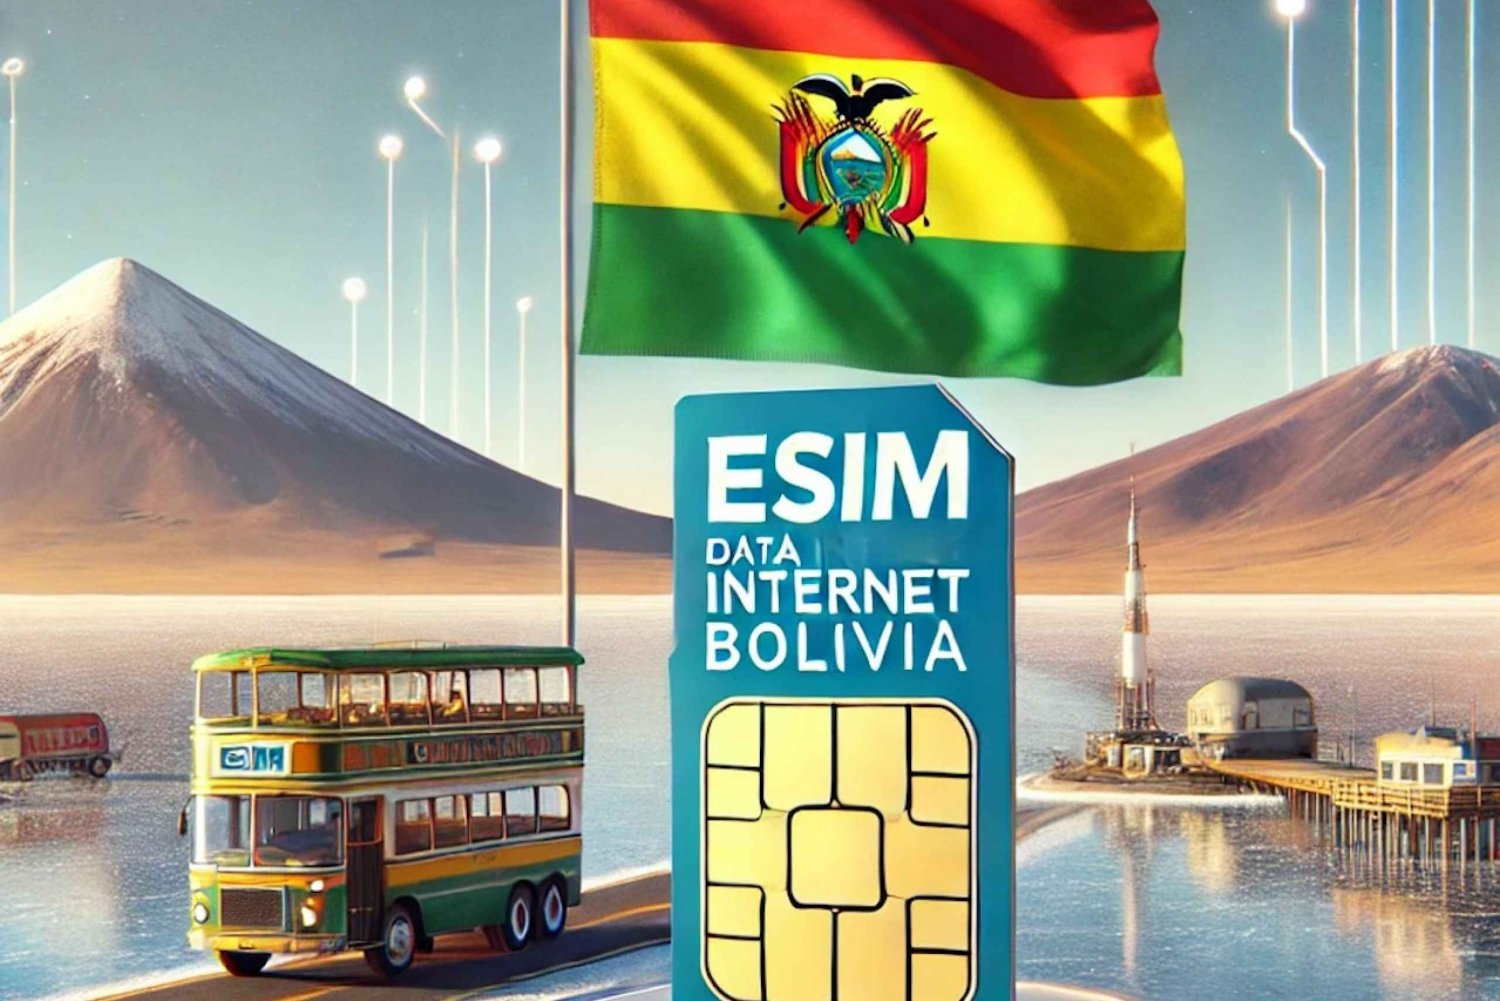 Bolivia: eSIM Internet Data Plan for 4G/5G